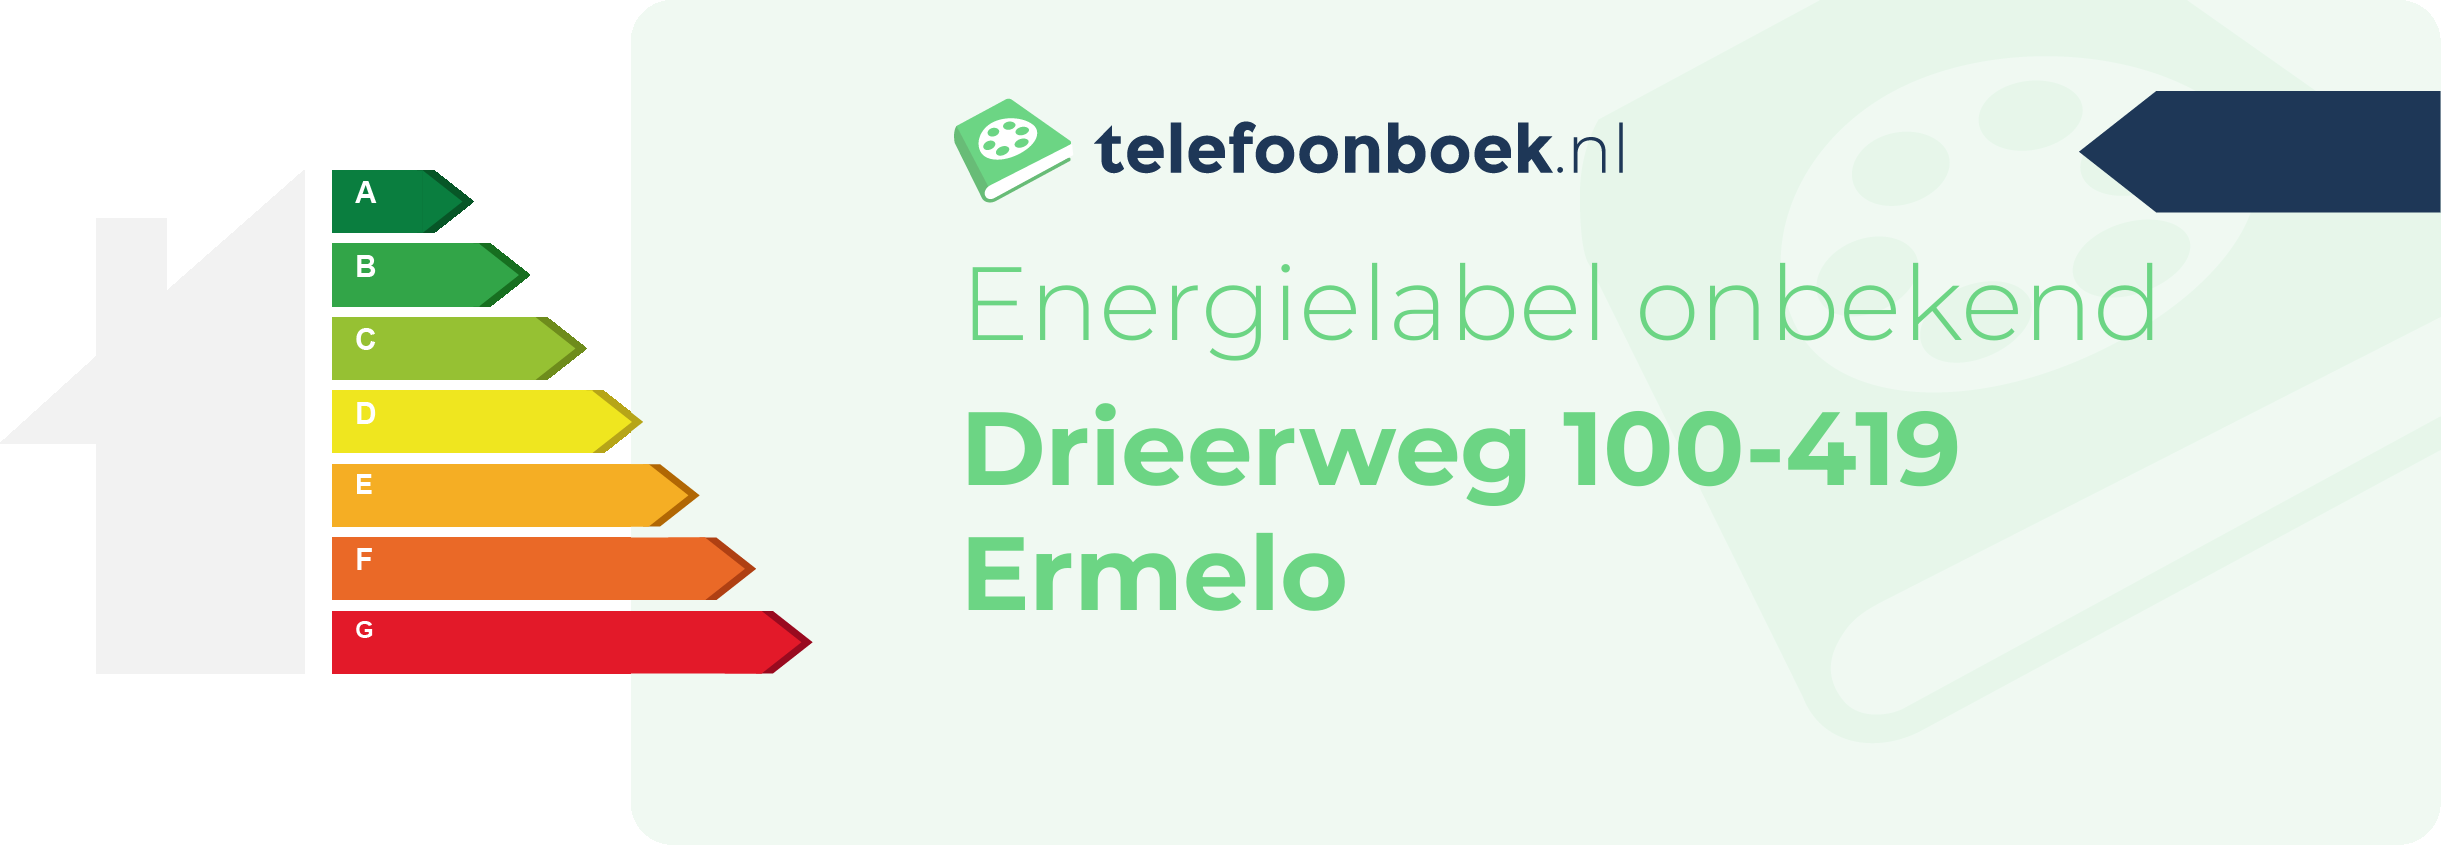 Energielabel Drieerweg 100-419 Ermelo